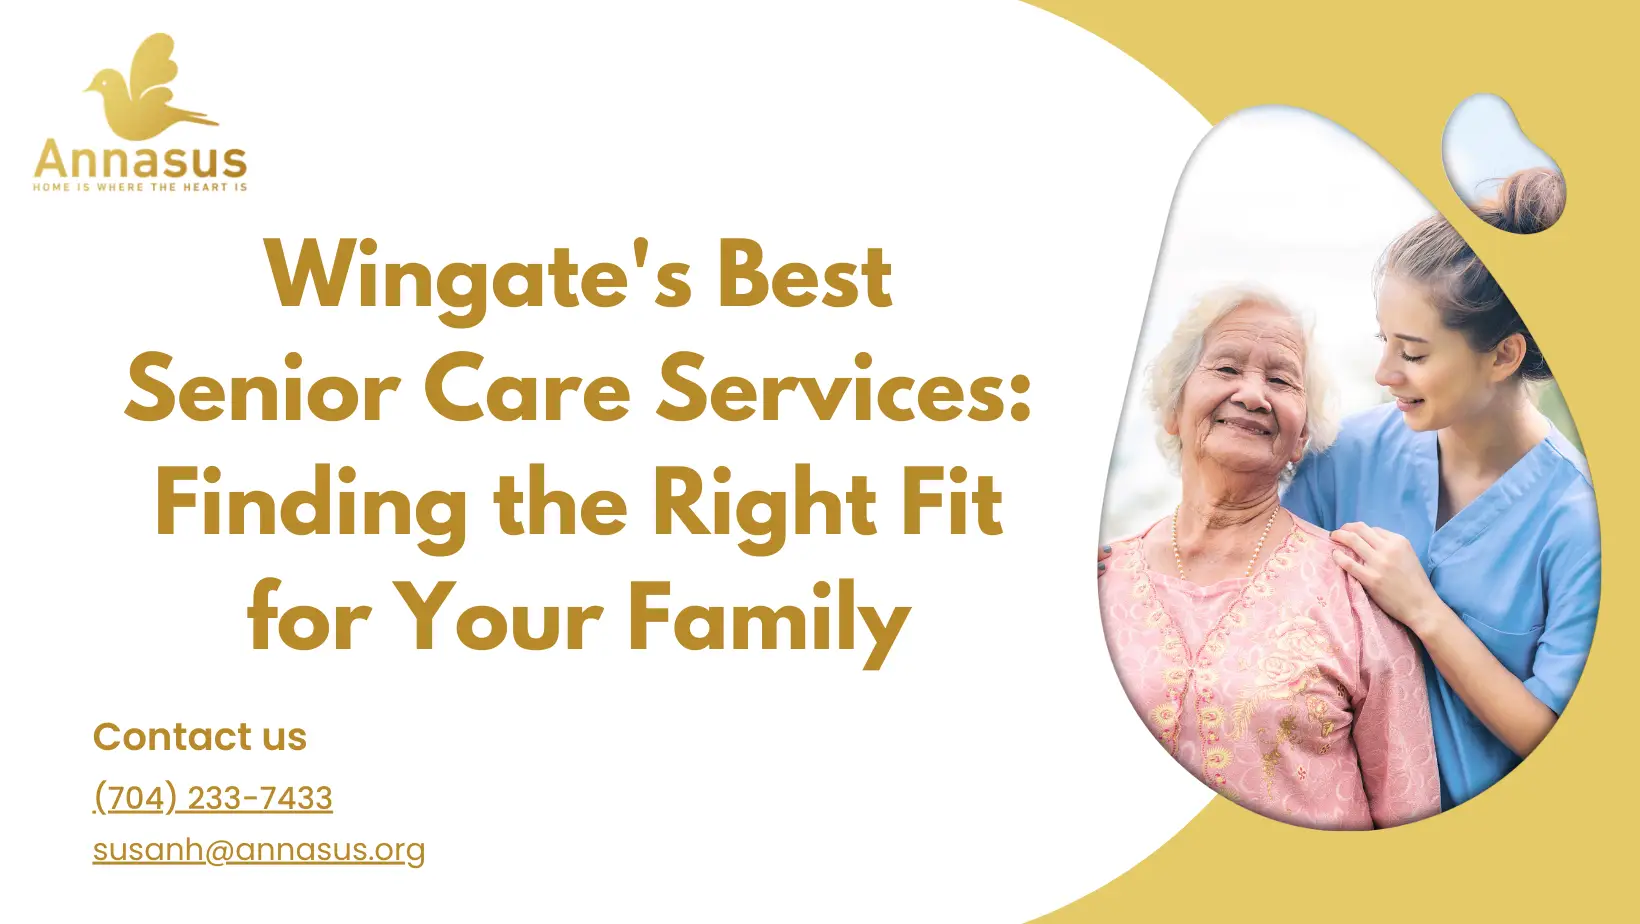 Wingate's Best Senior Care Services